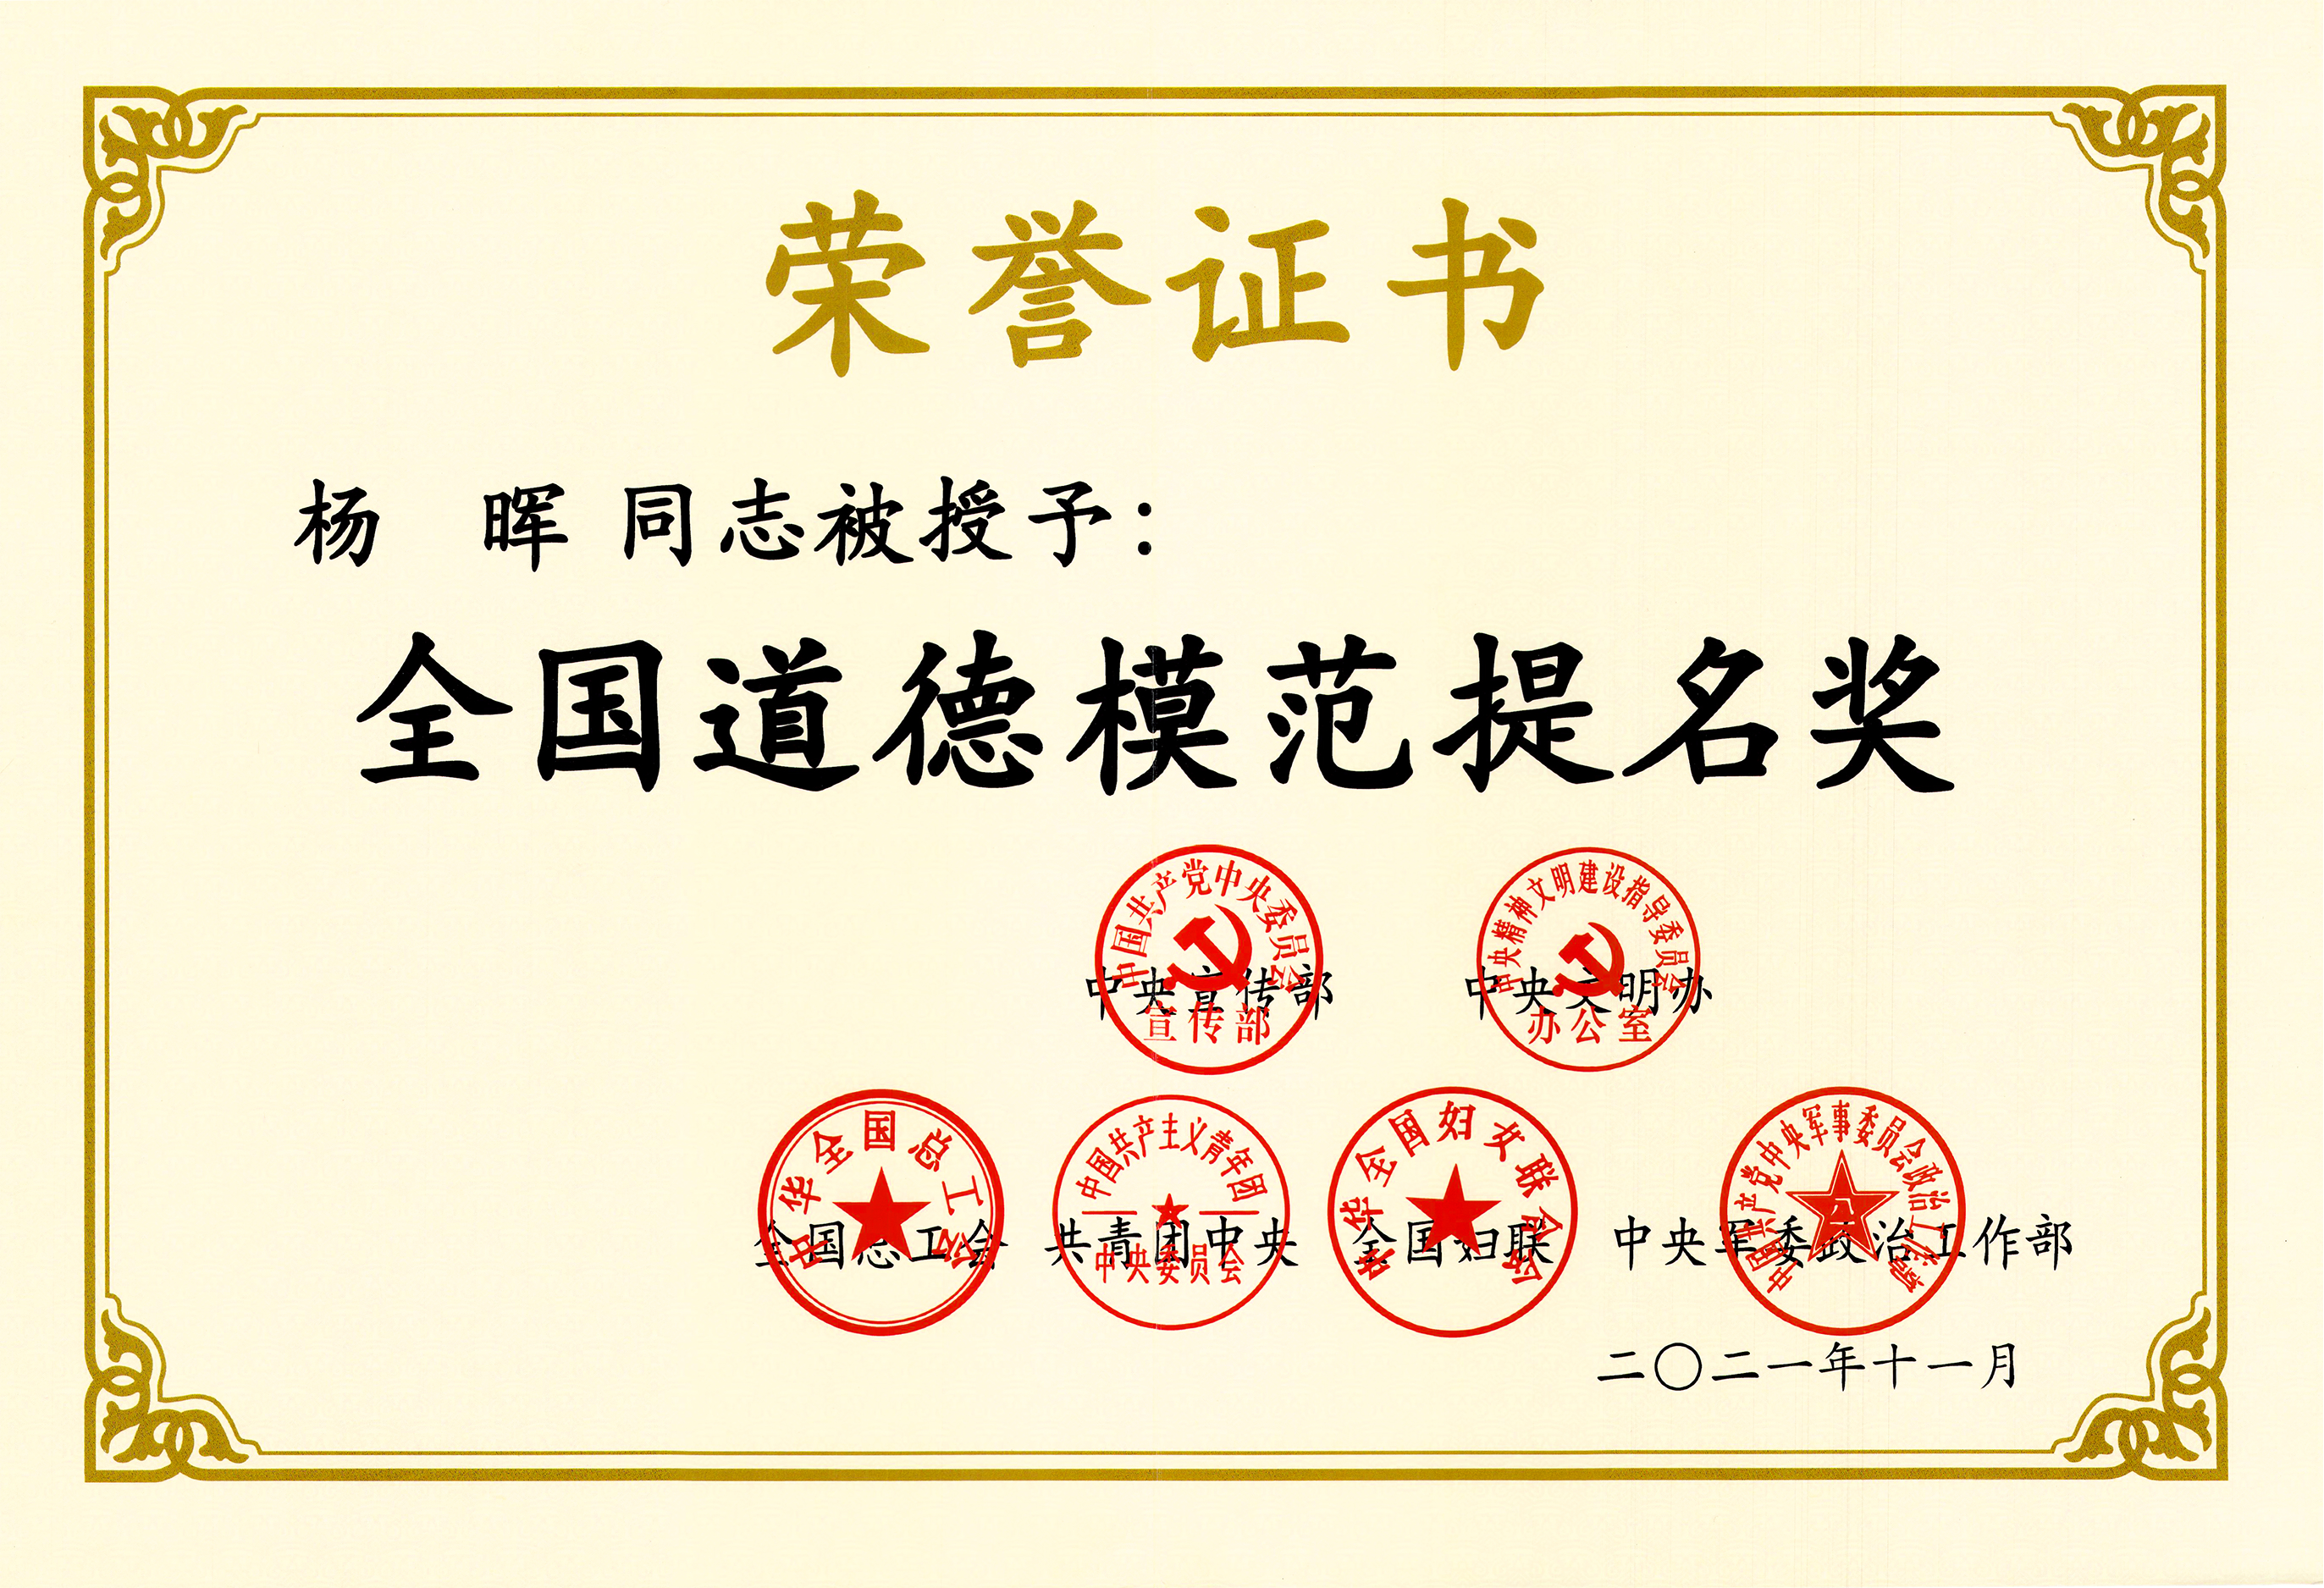 中央宣传部、中央文明办等授予董事长杨晖<br/>“全国道德模范提名奖”